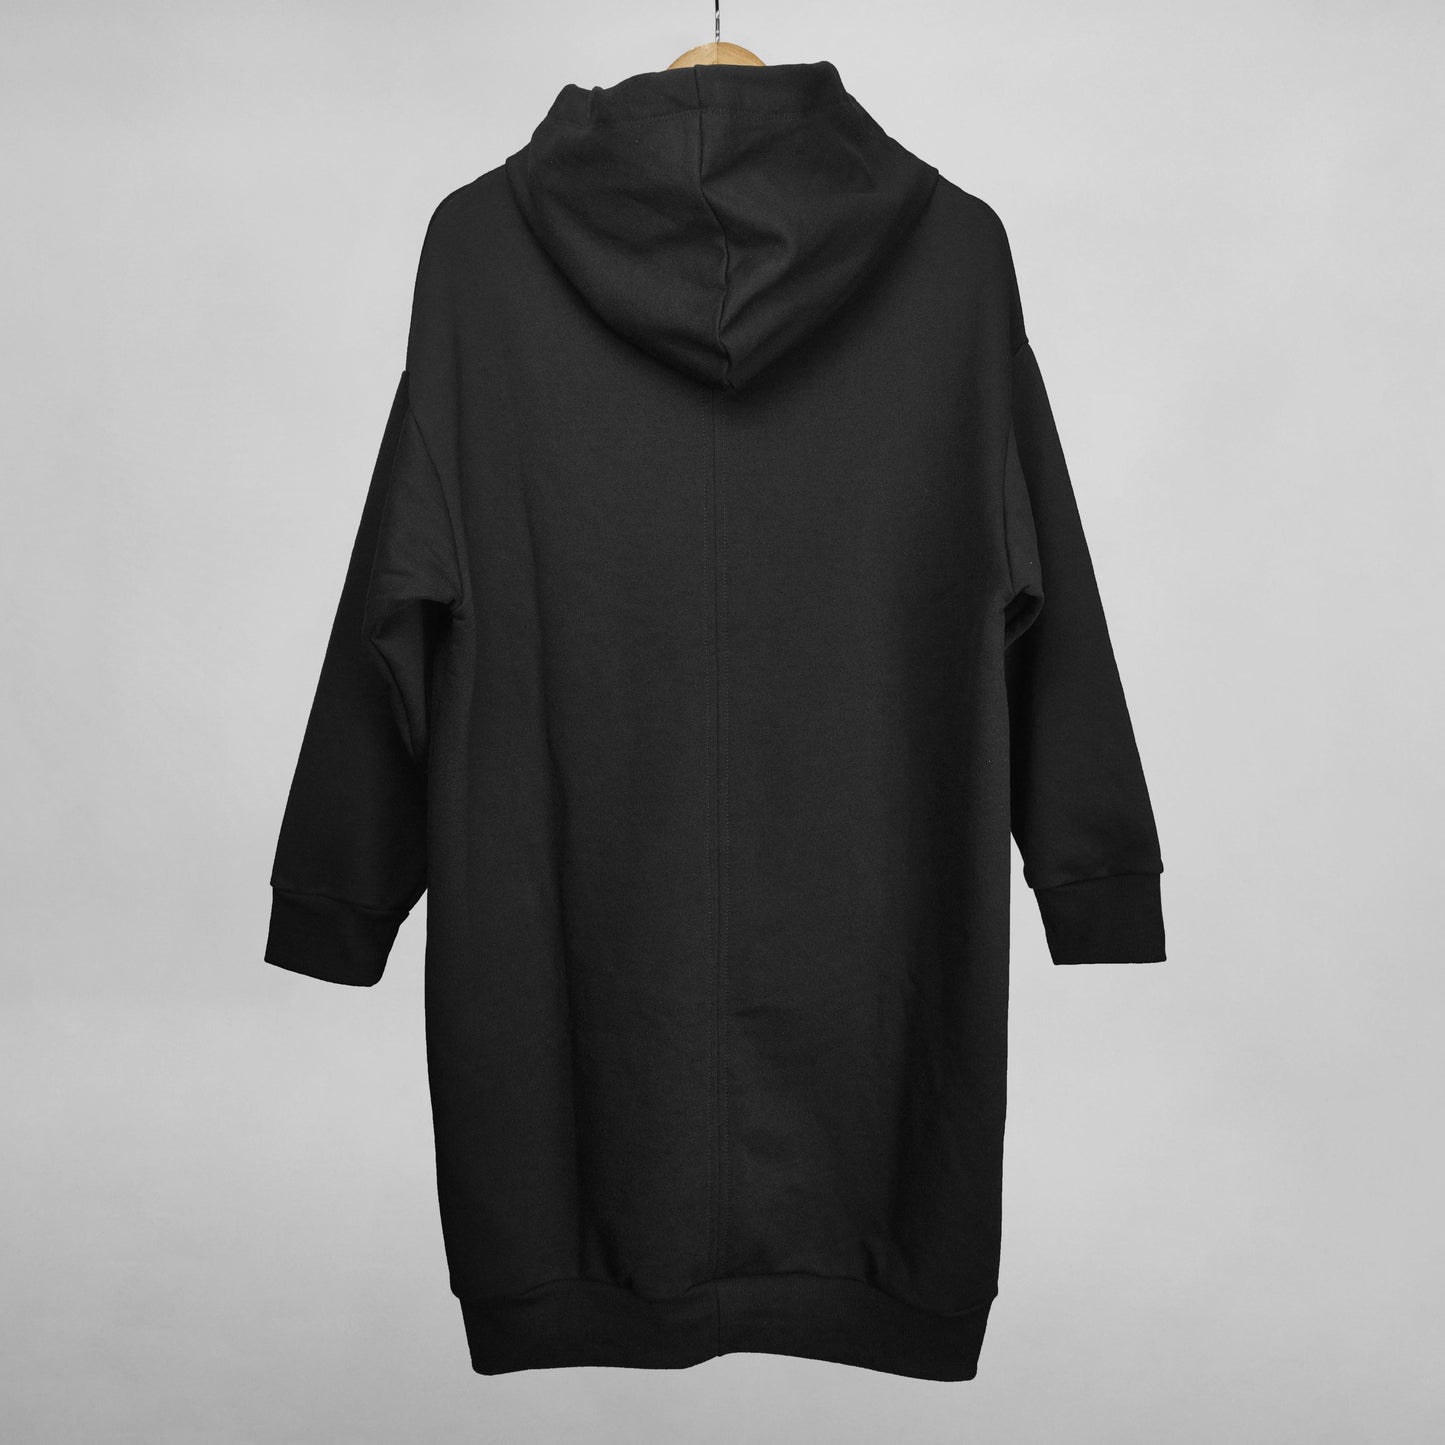 Espalda abrigo o chaqueta larga con capota color negro